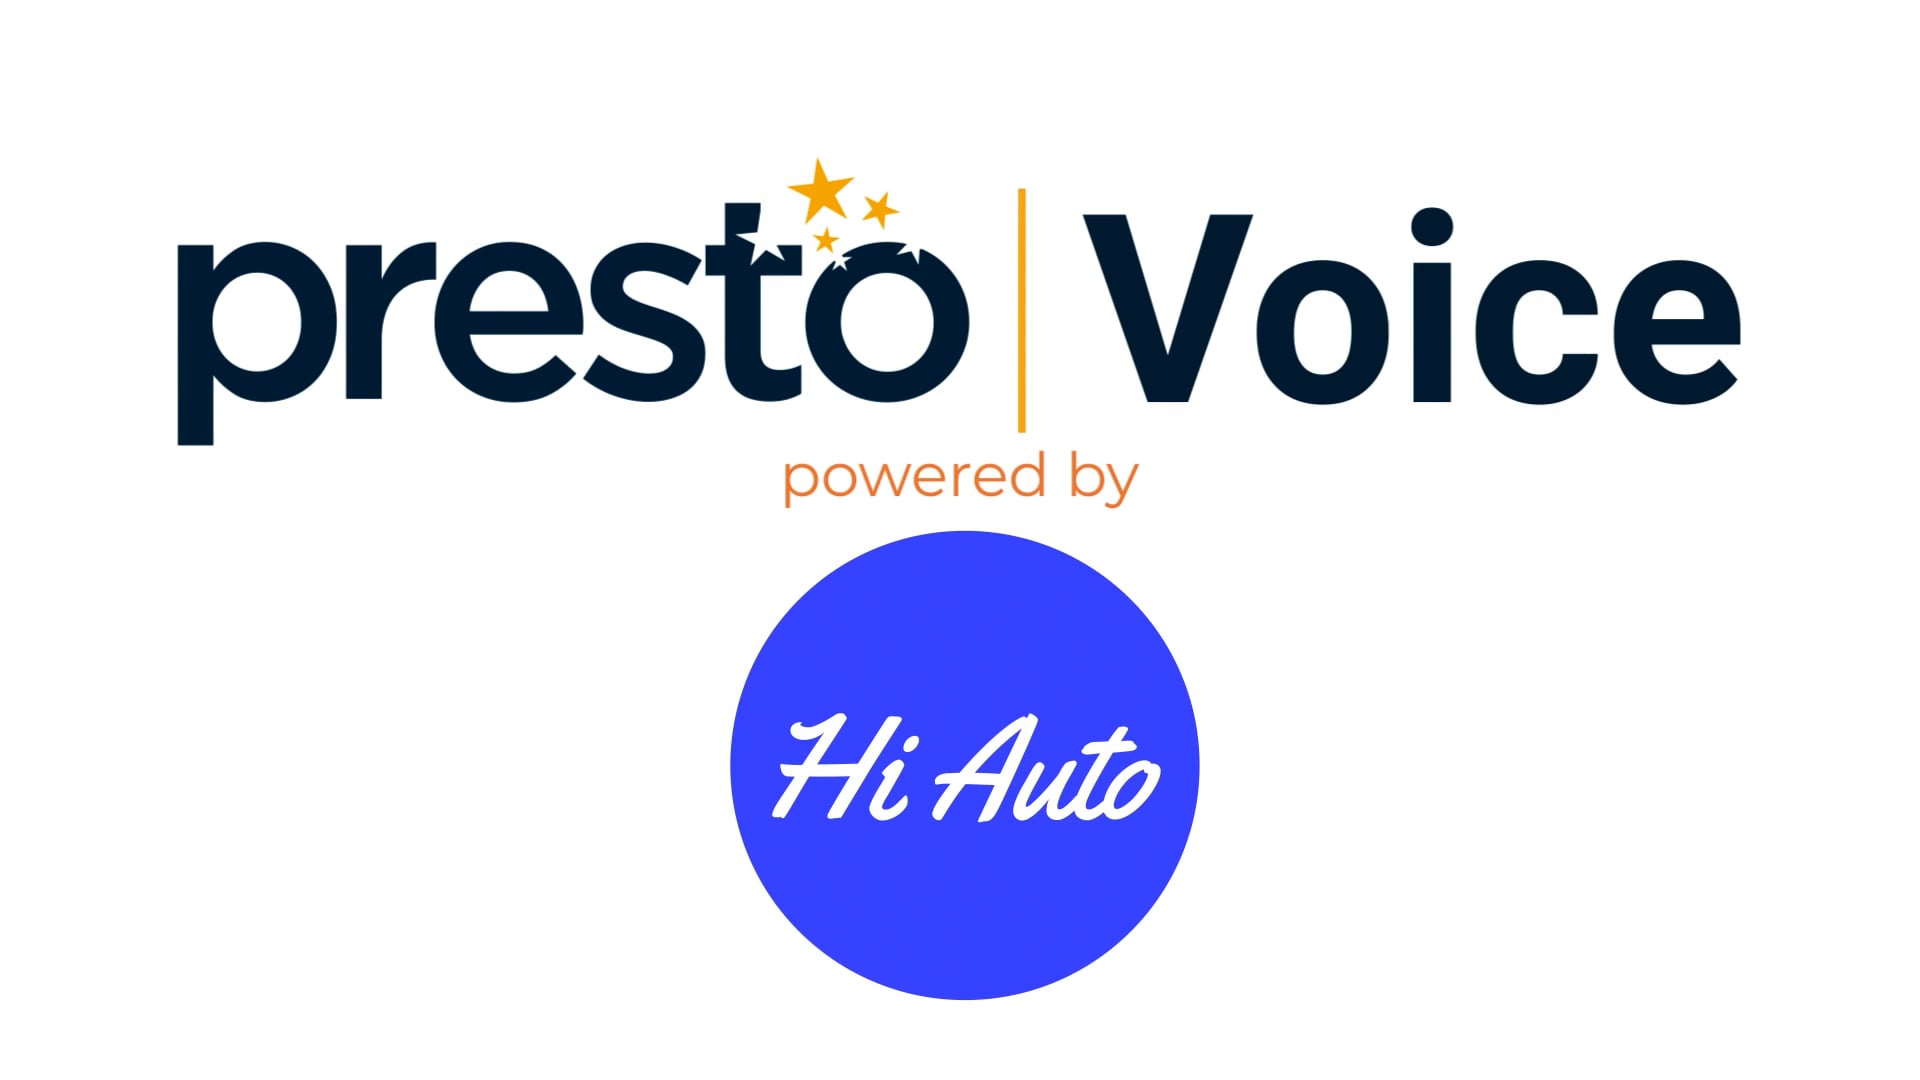 Hi Auto | Presto Voice